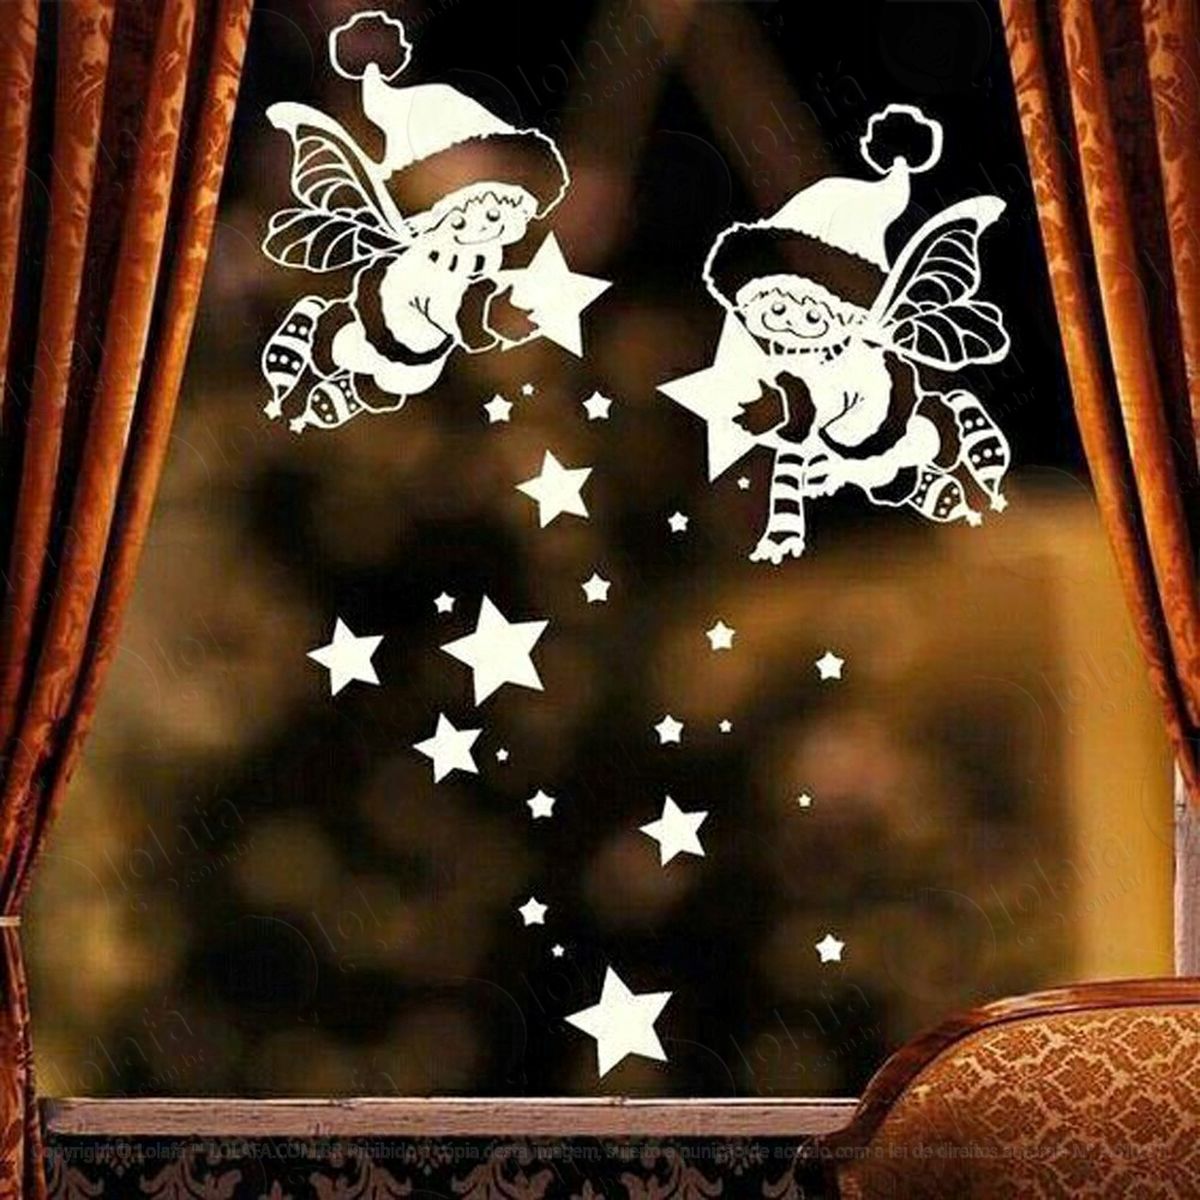 fadas e estrelinhas adesivo de natal para vitrine, parede, porta de vidro - decoração natalina mod:305